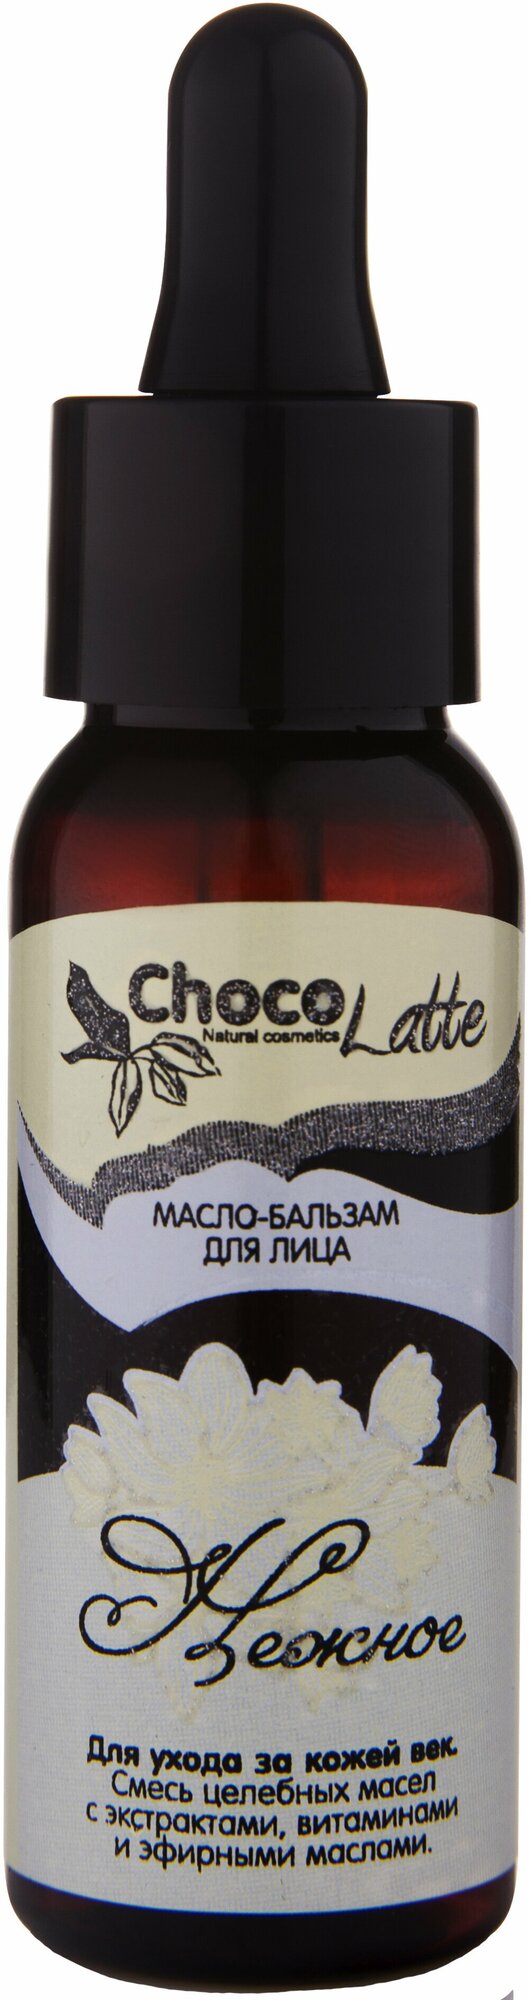 ChocoLatte Масло-бальзам для век нежное для подтяжки, с anti-age эффектом, 30 ml